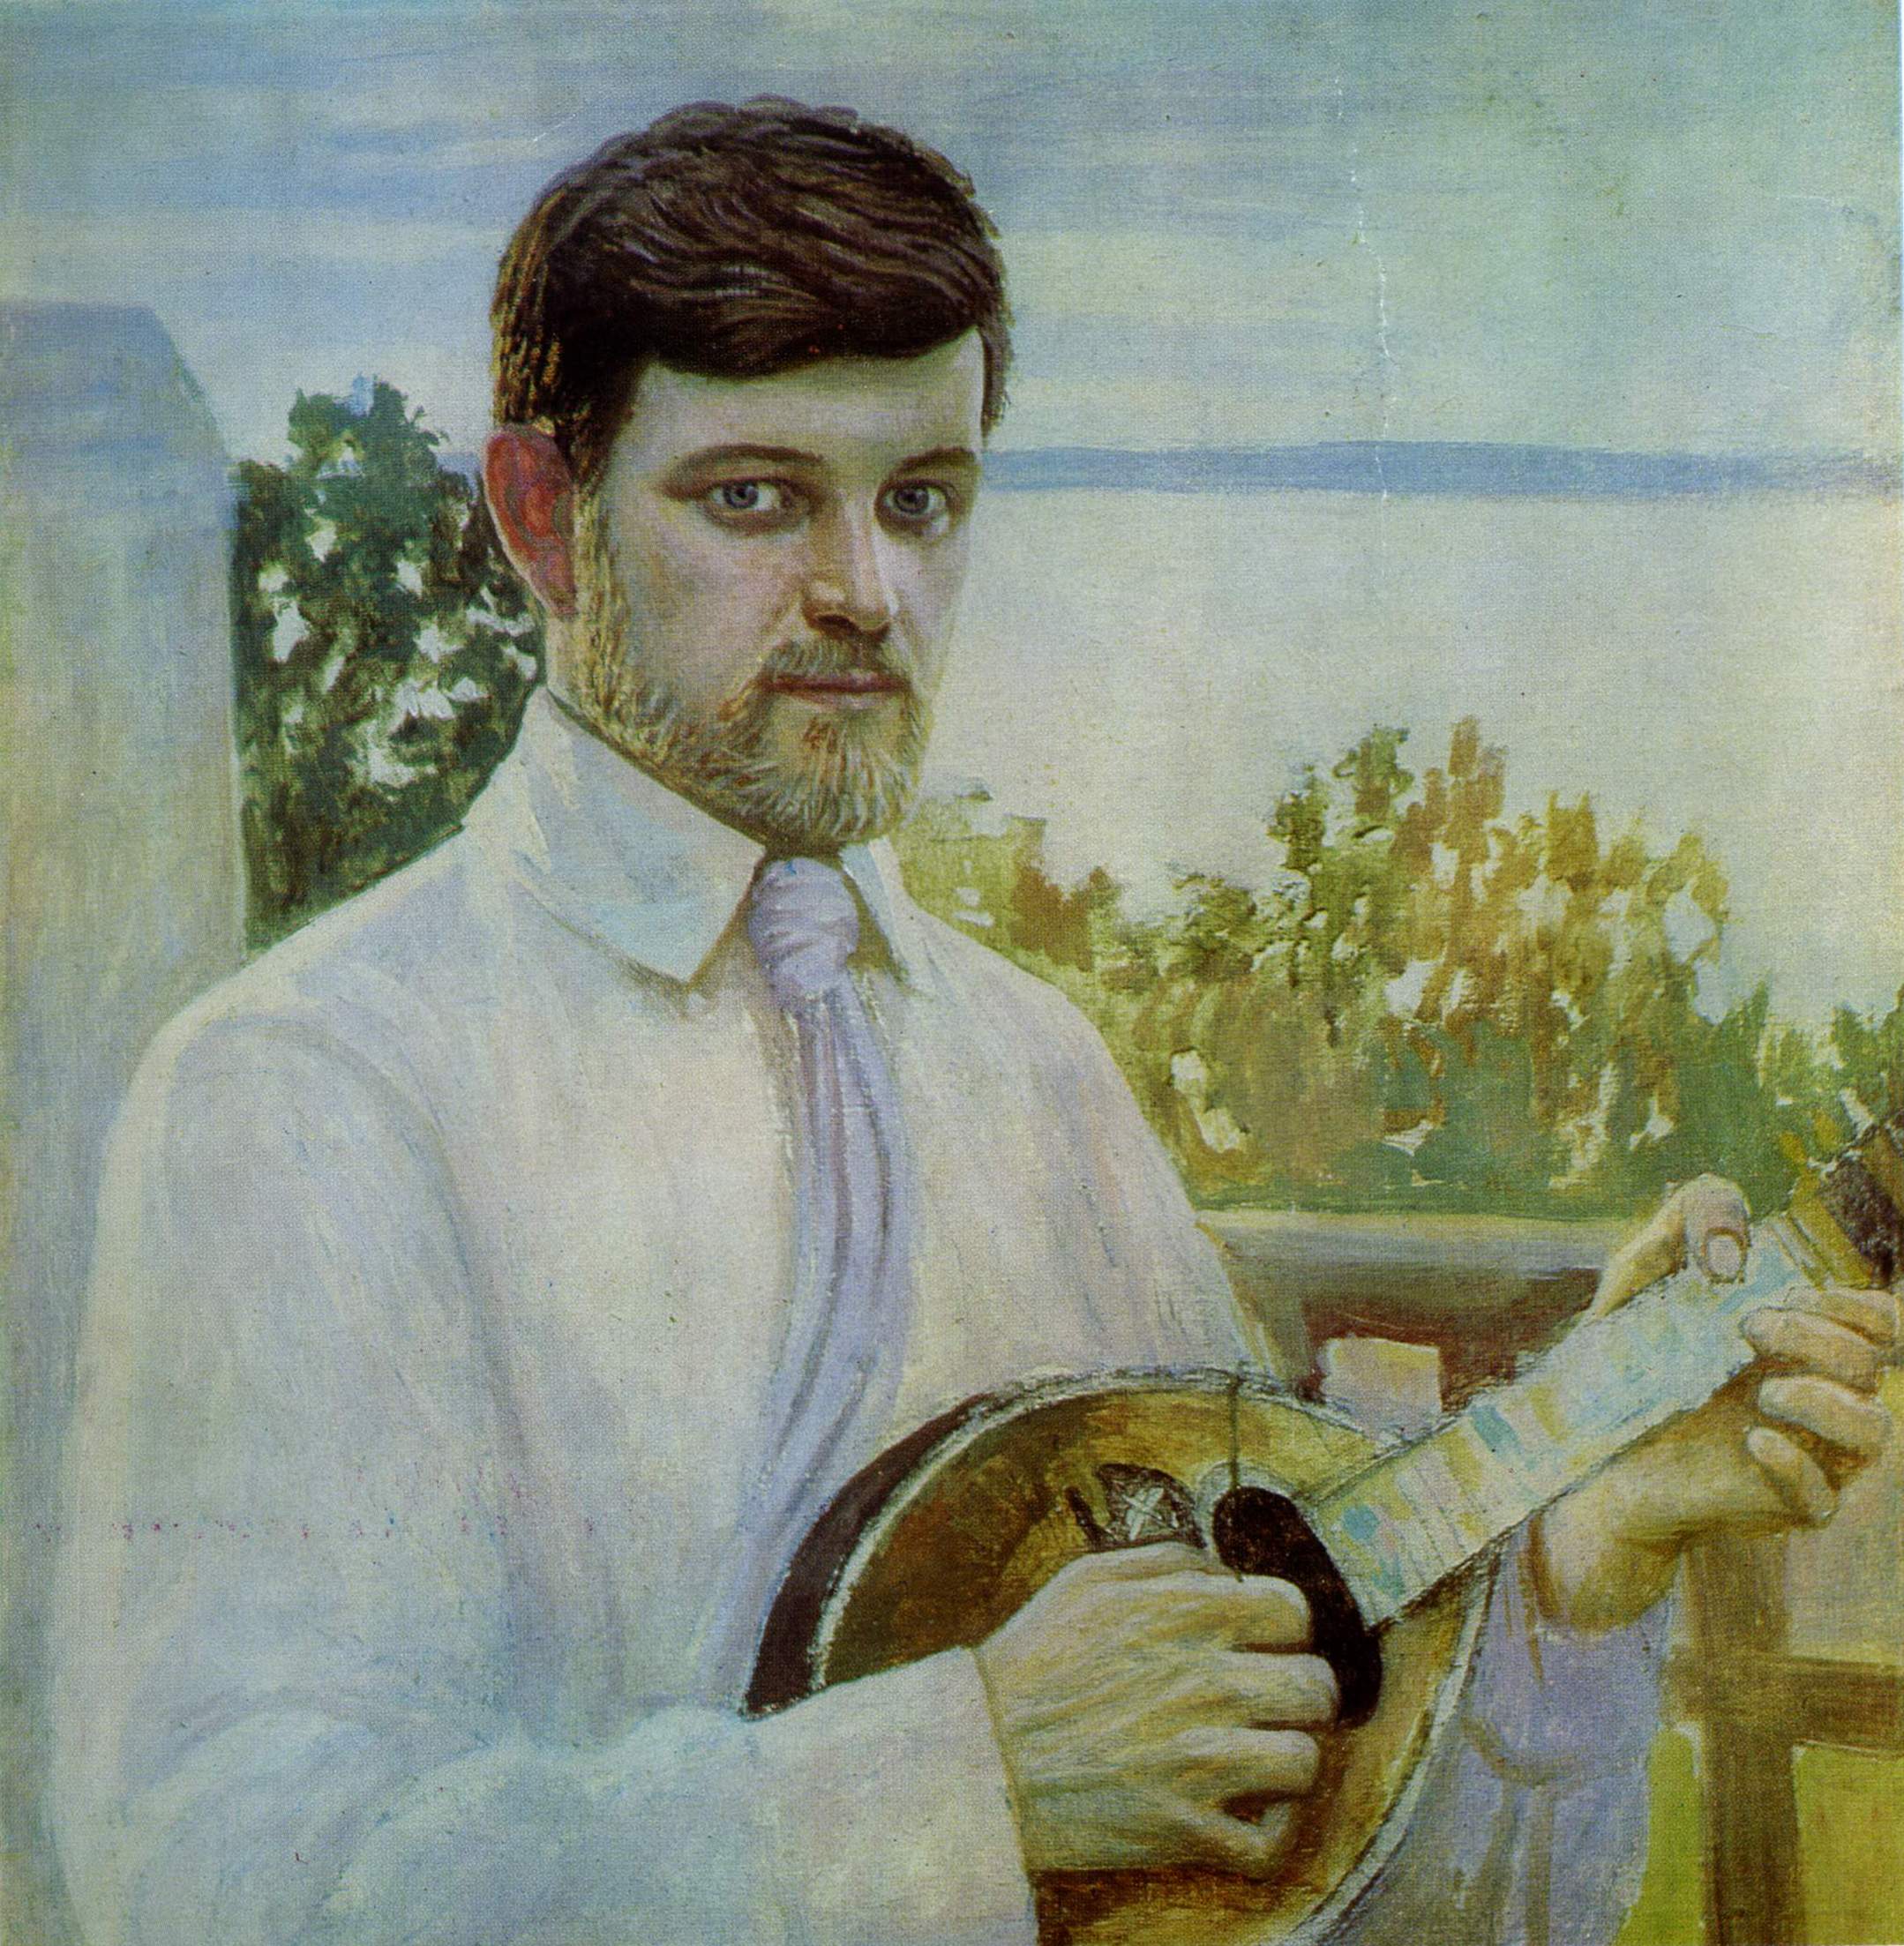 Сапожников. Мужской портрет. 1910-е